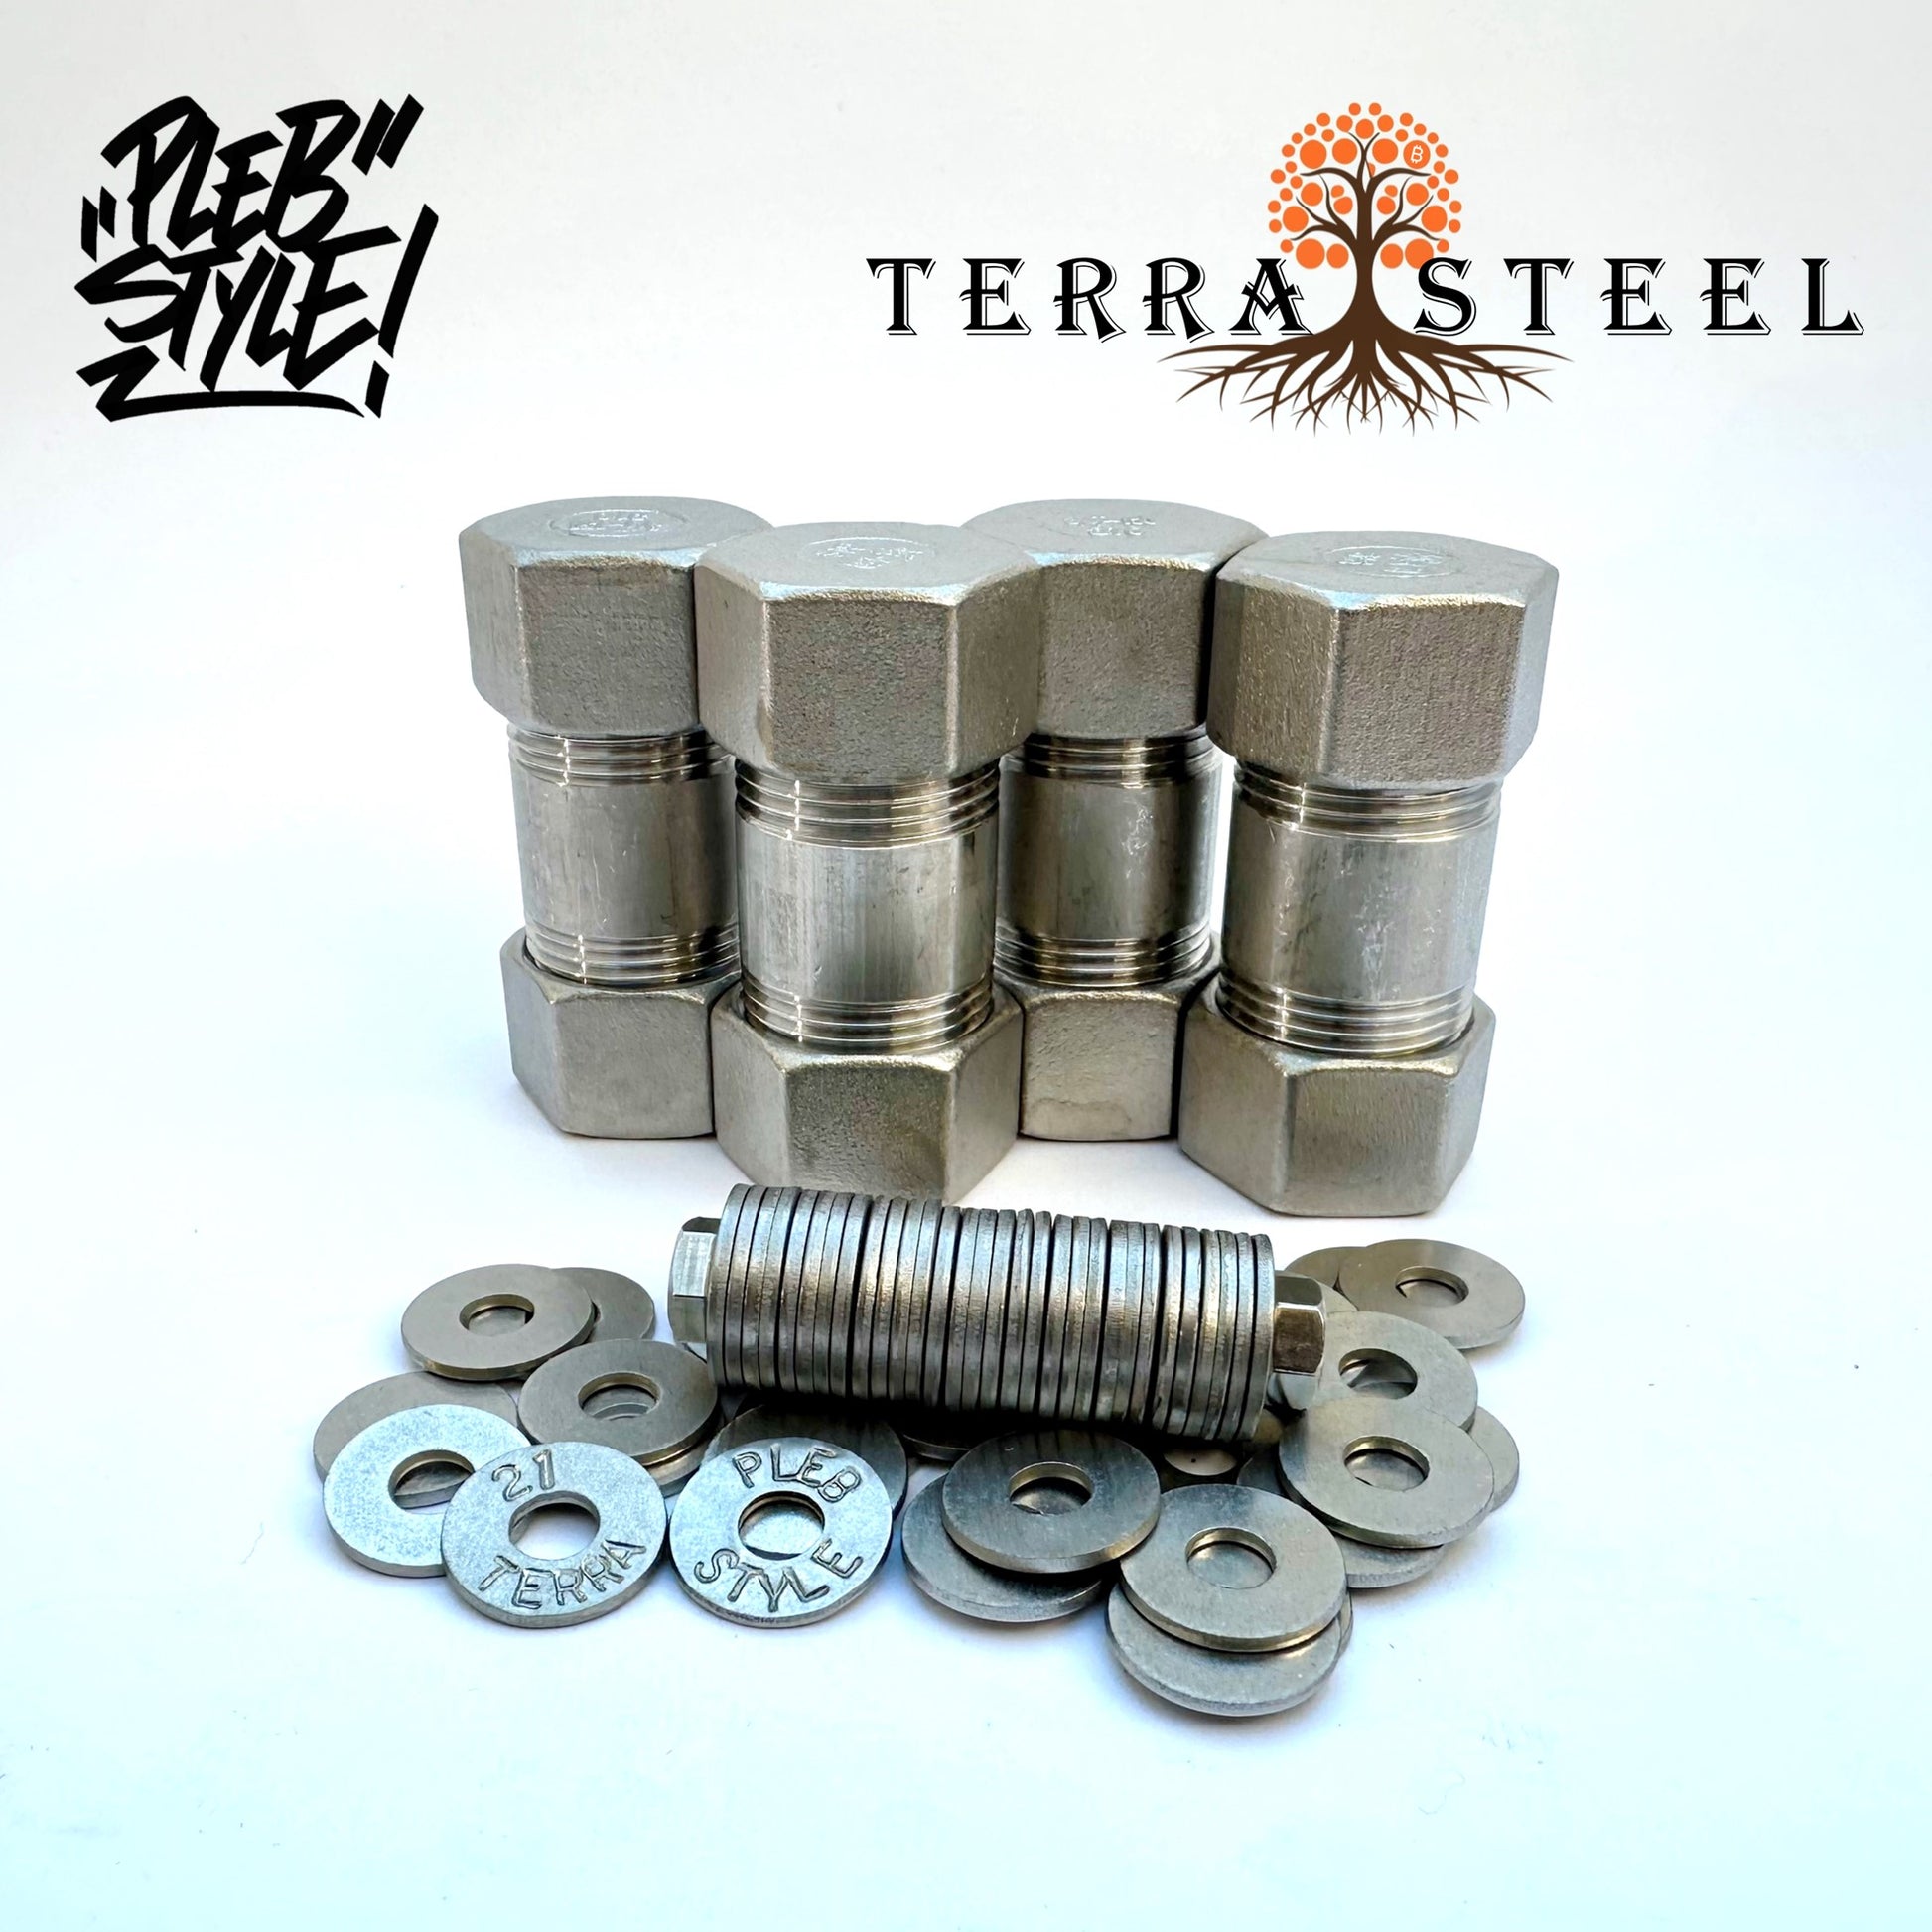 4x Terra Steel Wallet by Plebstyle